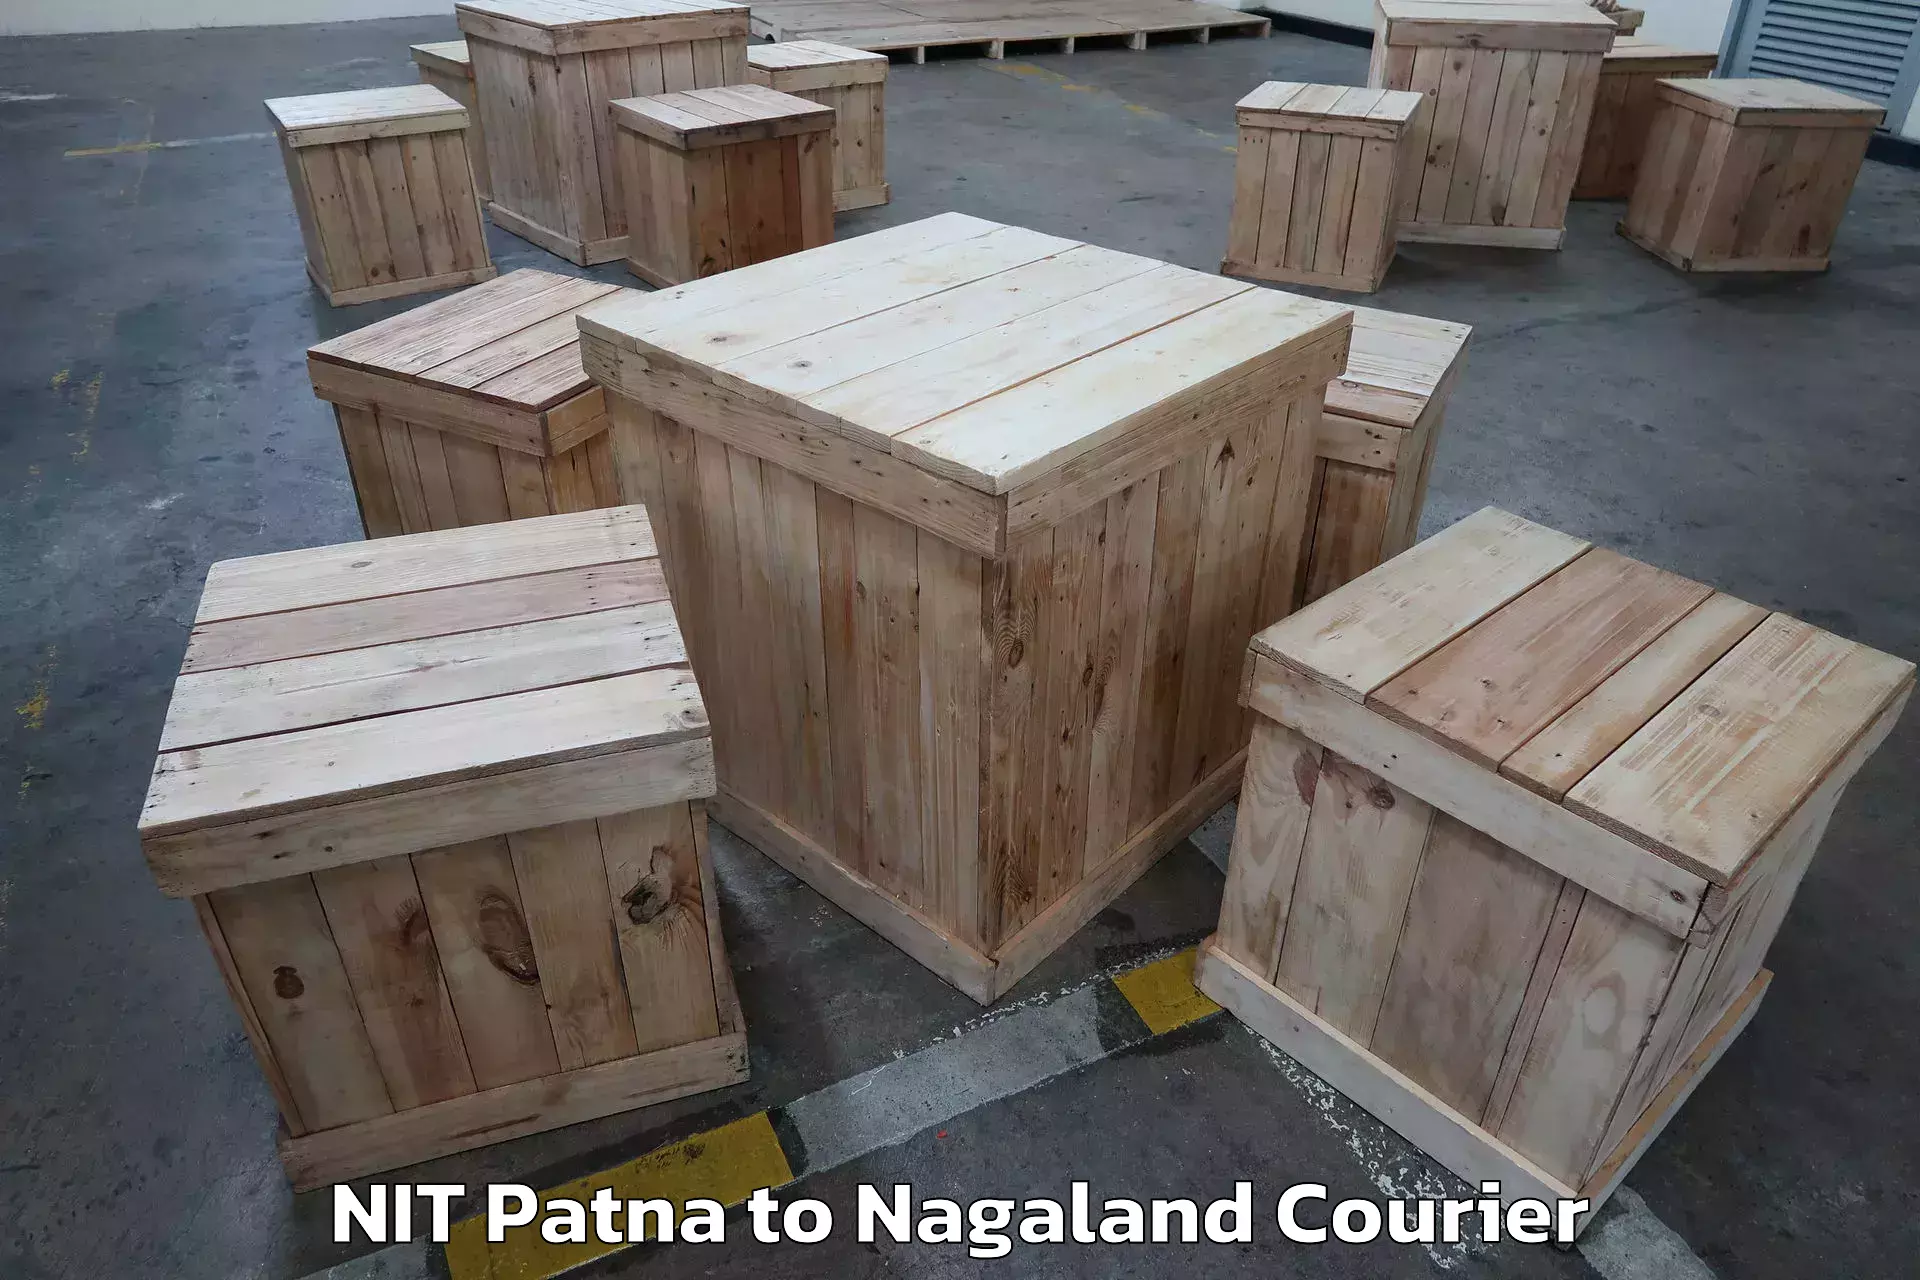 Door-to-door relocation services NIT Patna to Dimapur